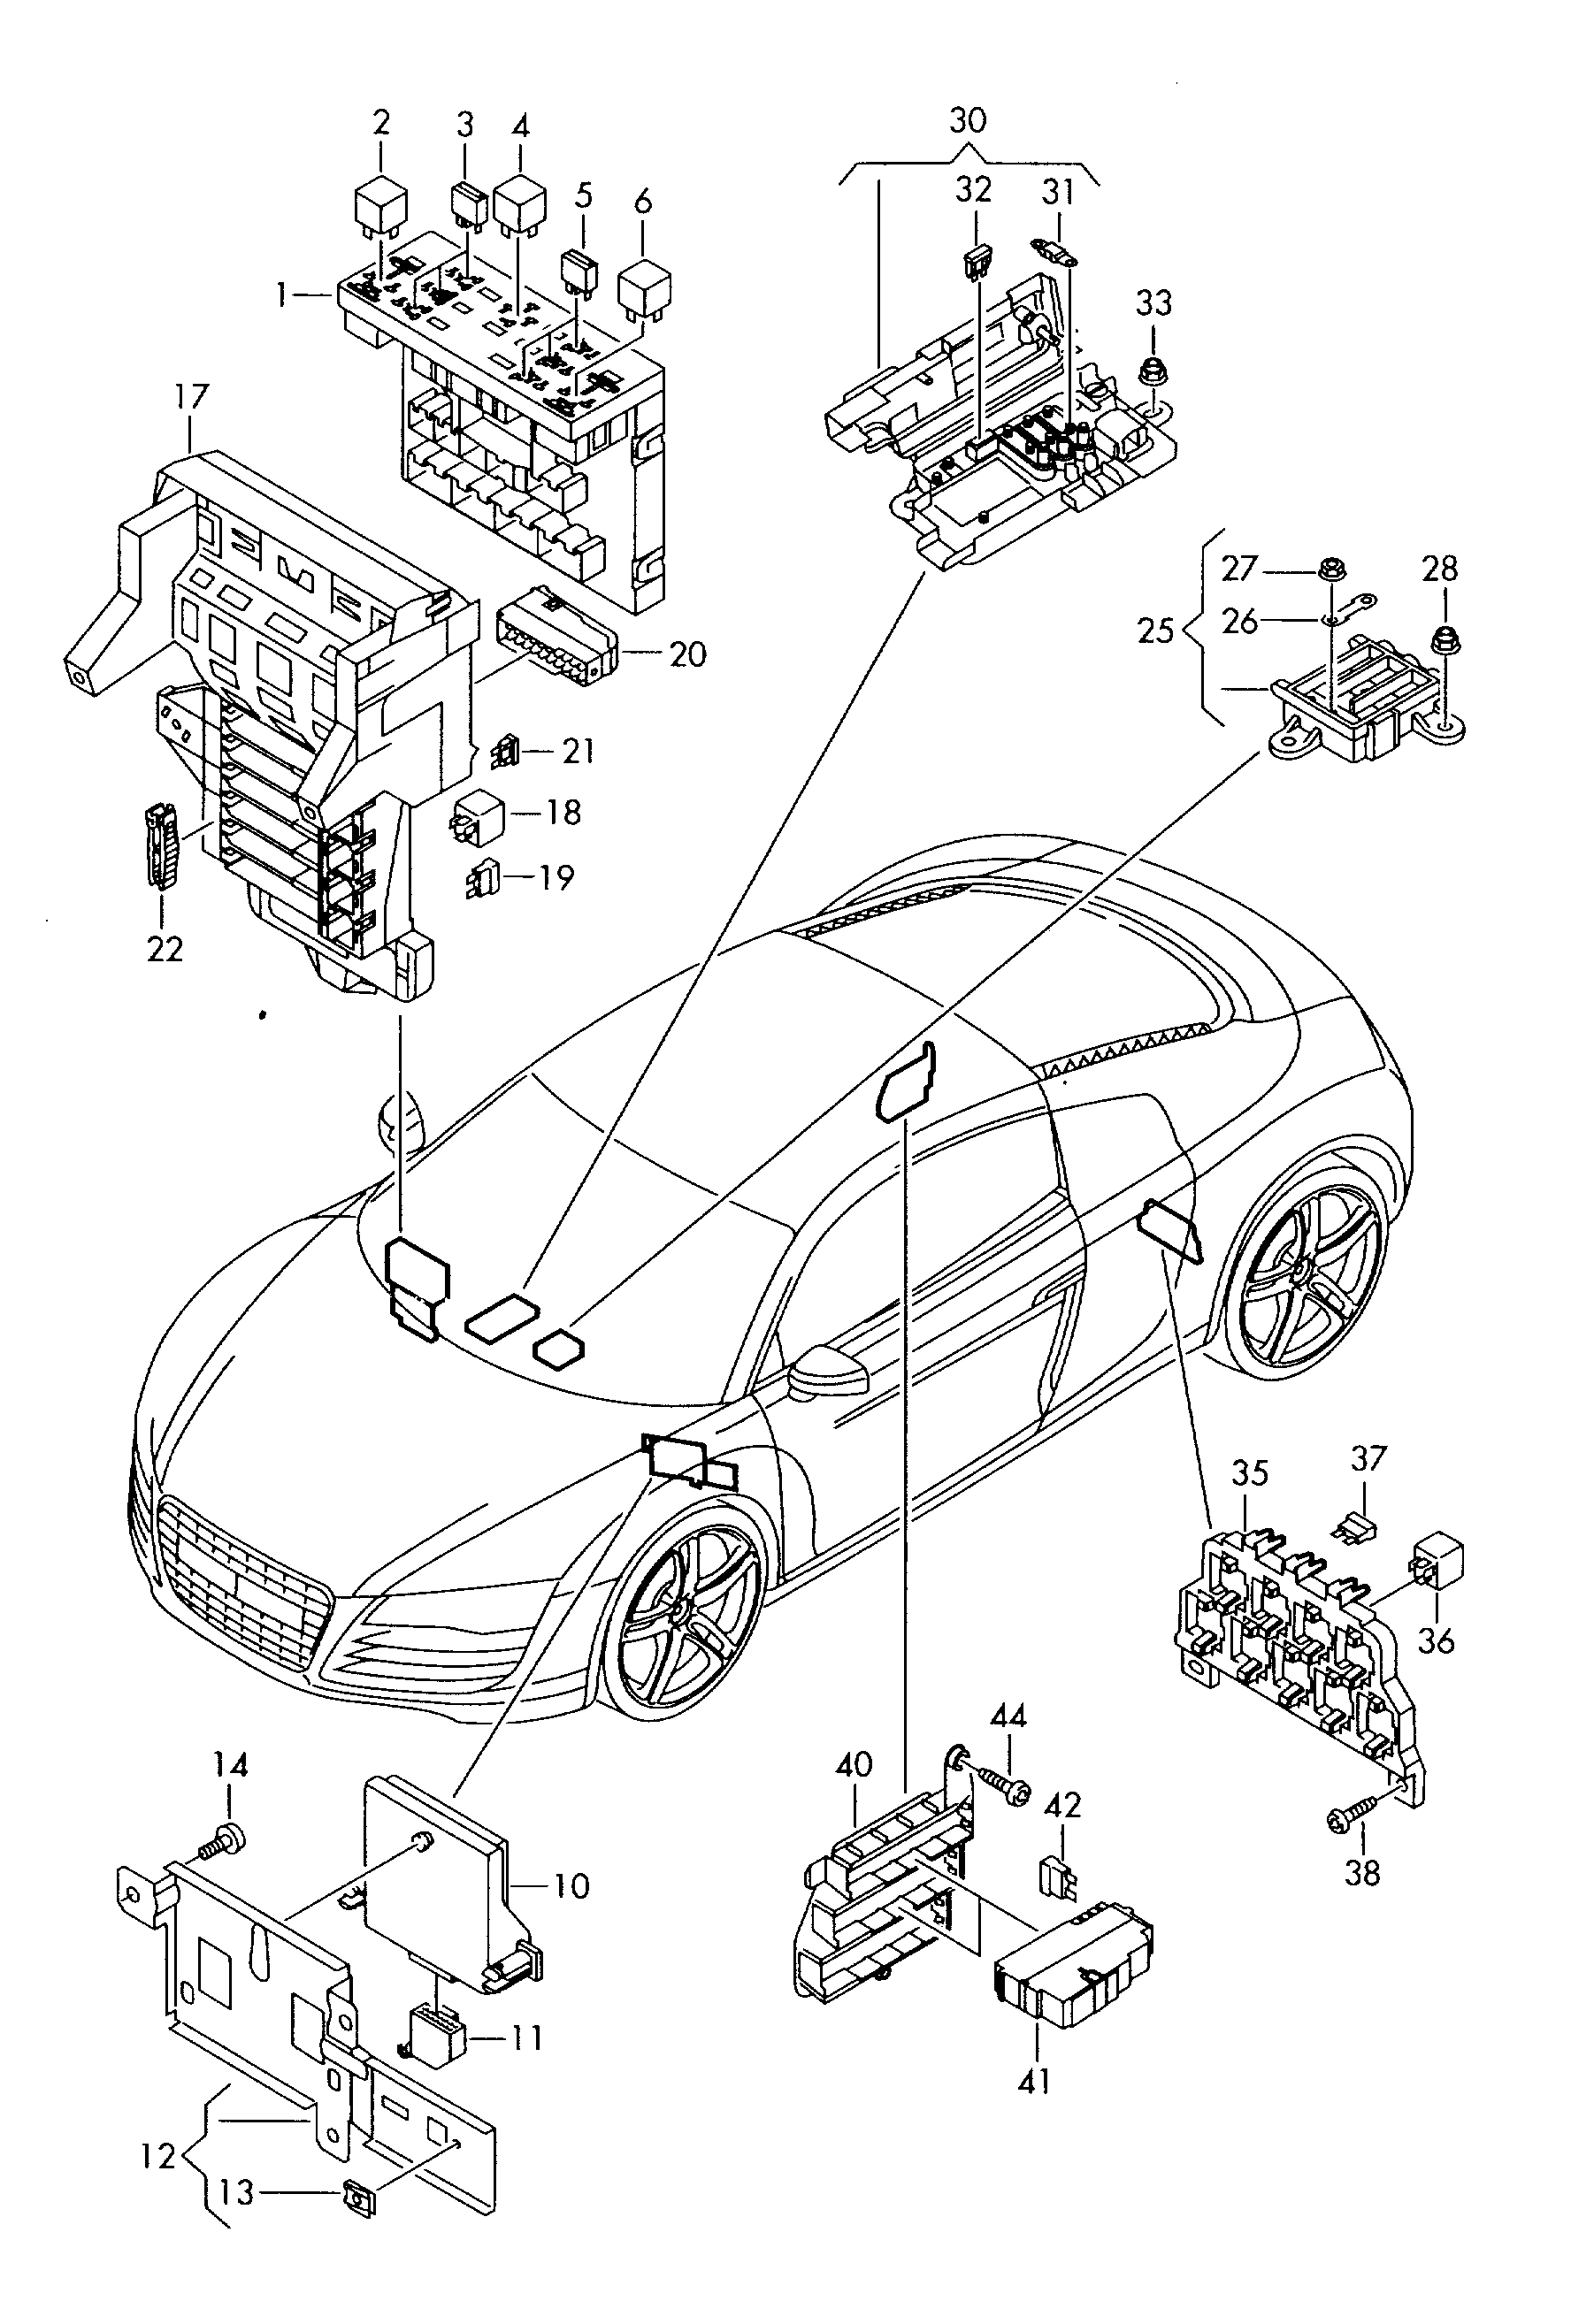 centralita electrica, caja de
fusibles, portarrel... - Audi R8(R8)  